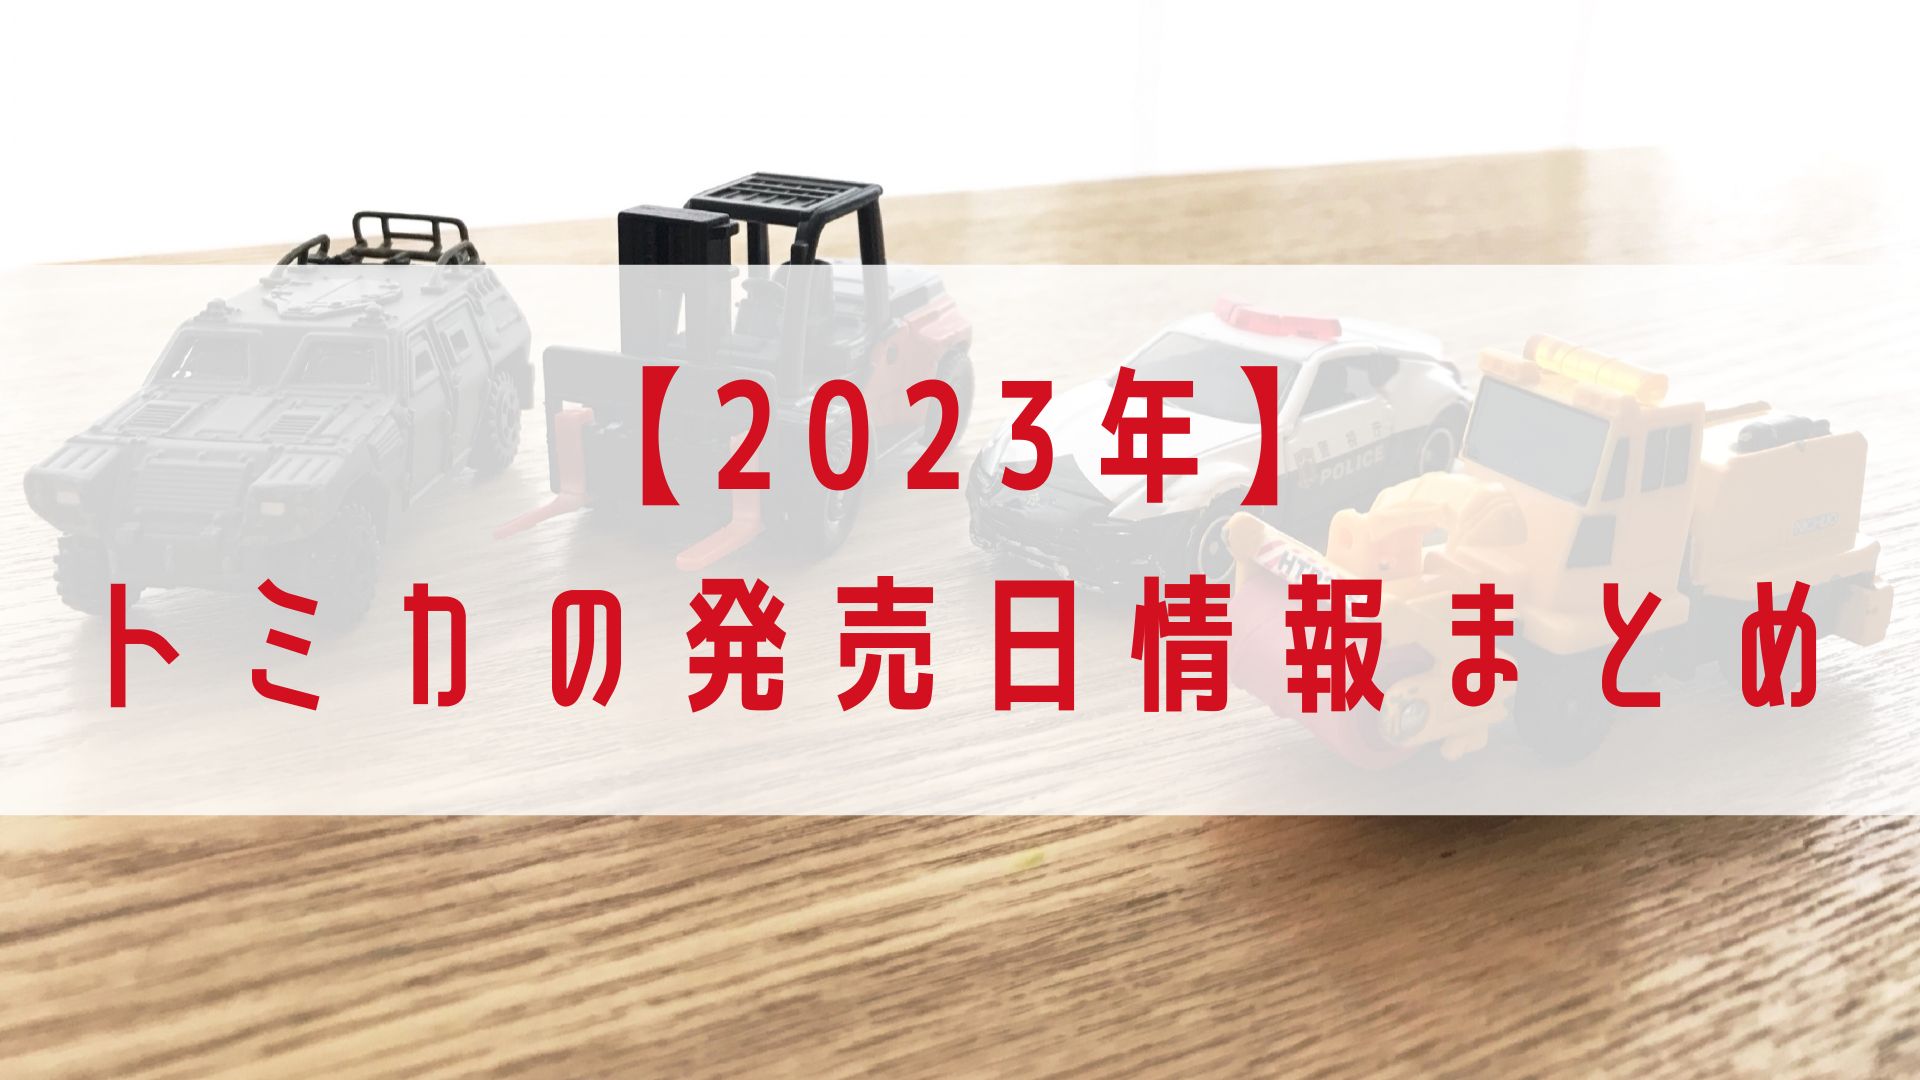 【2023年】トミカ 新製品の発売日&情報 まとめ